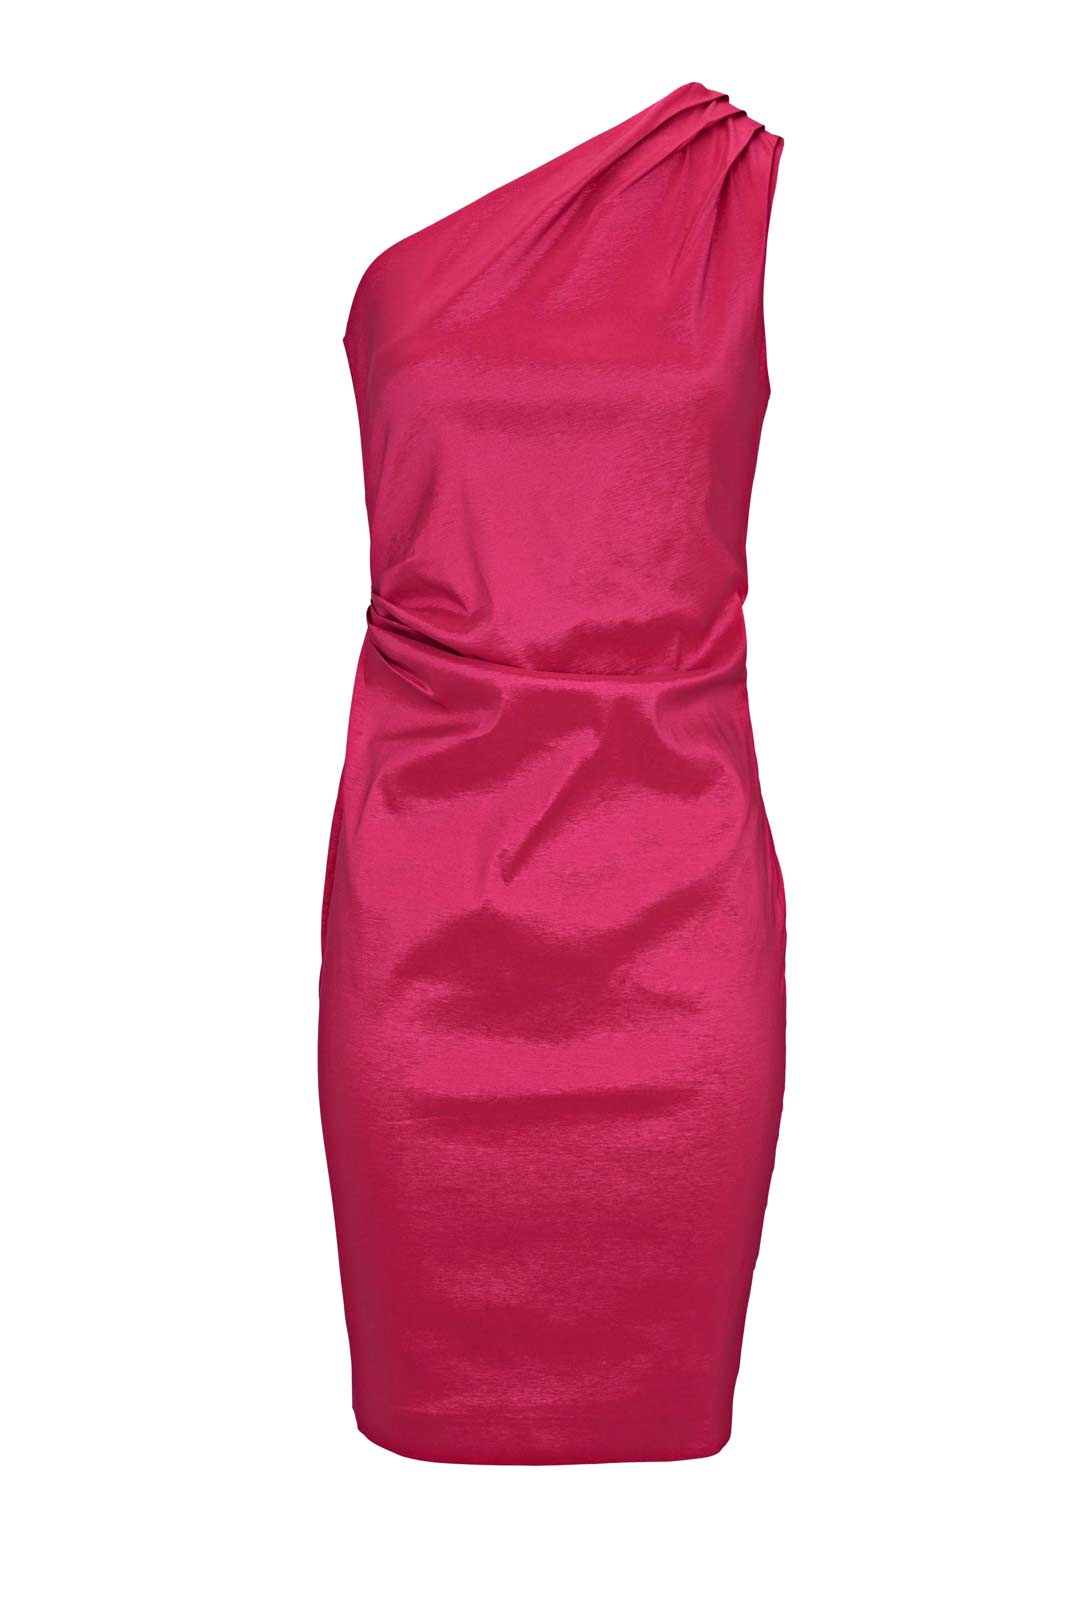 Ashley Brooke Damen Designer-One-Shoulderkleid, pink